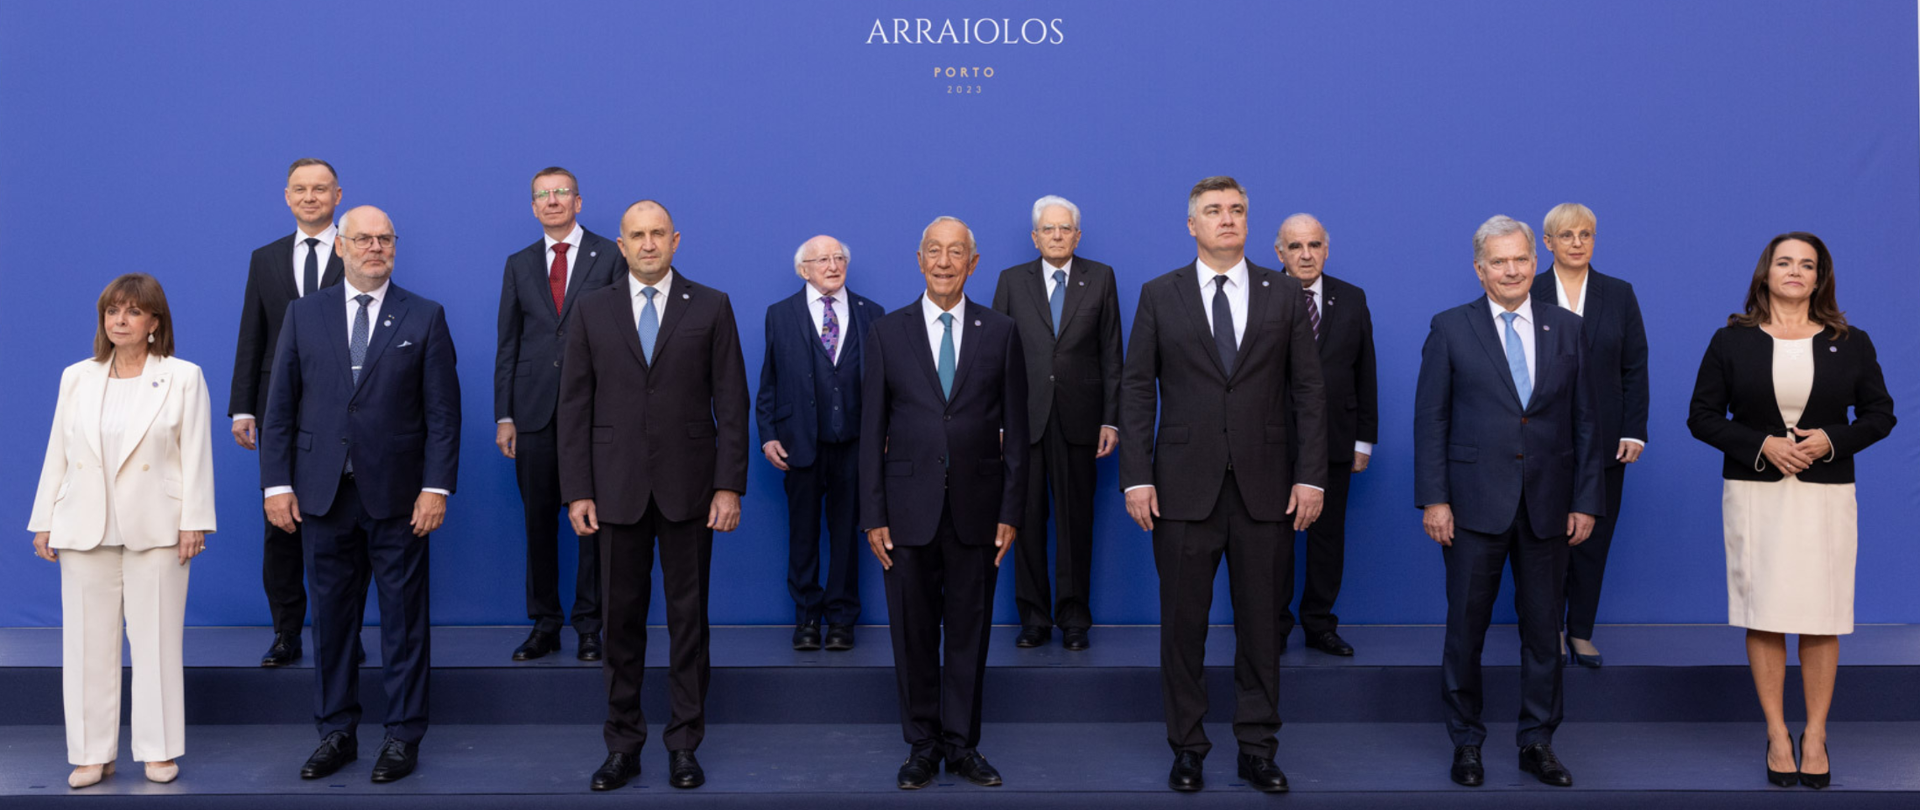 Spotkanie Prezydentów Państw Grupy Arraiolos